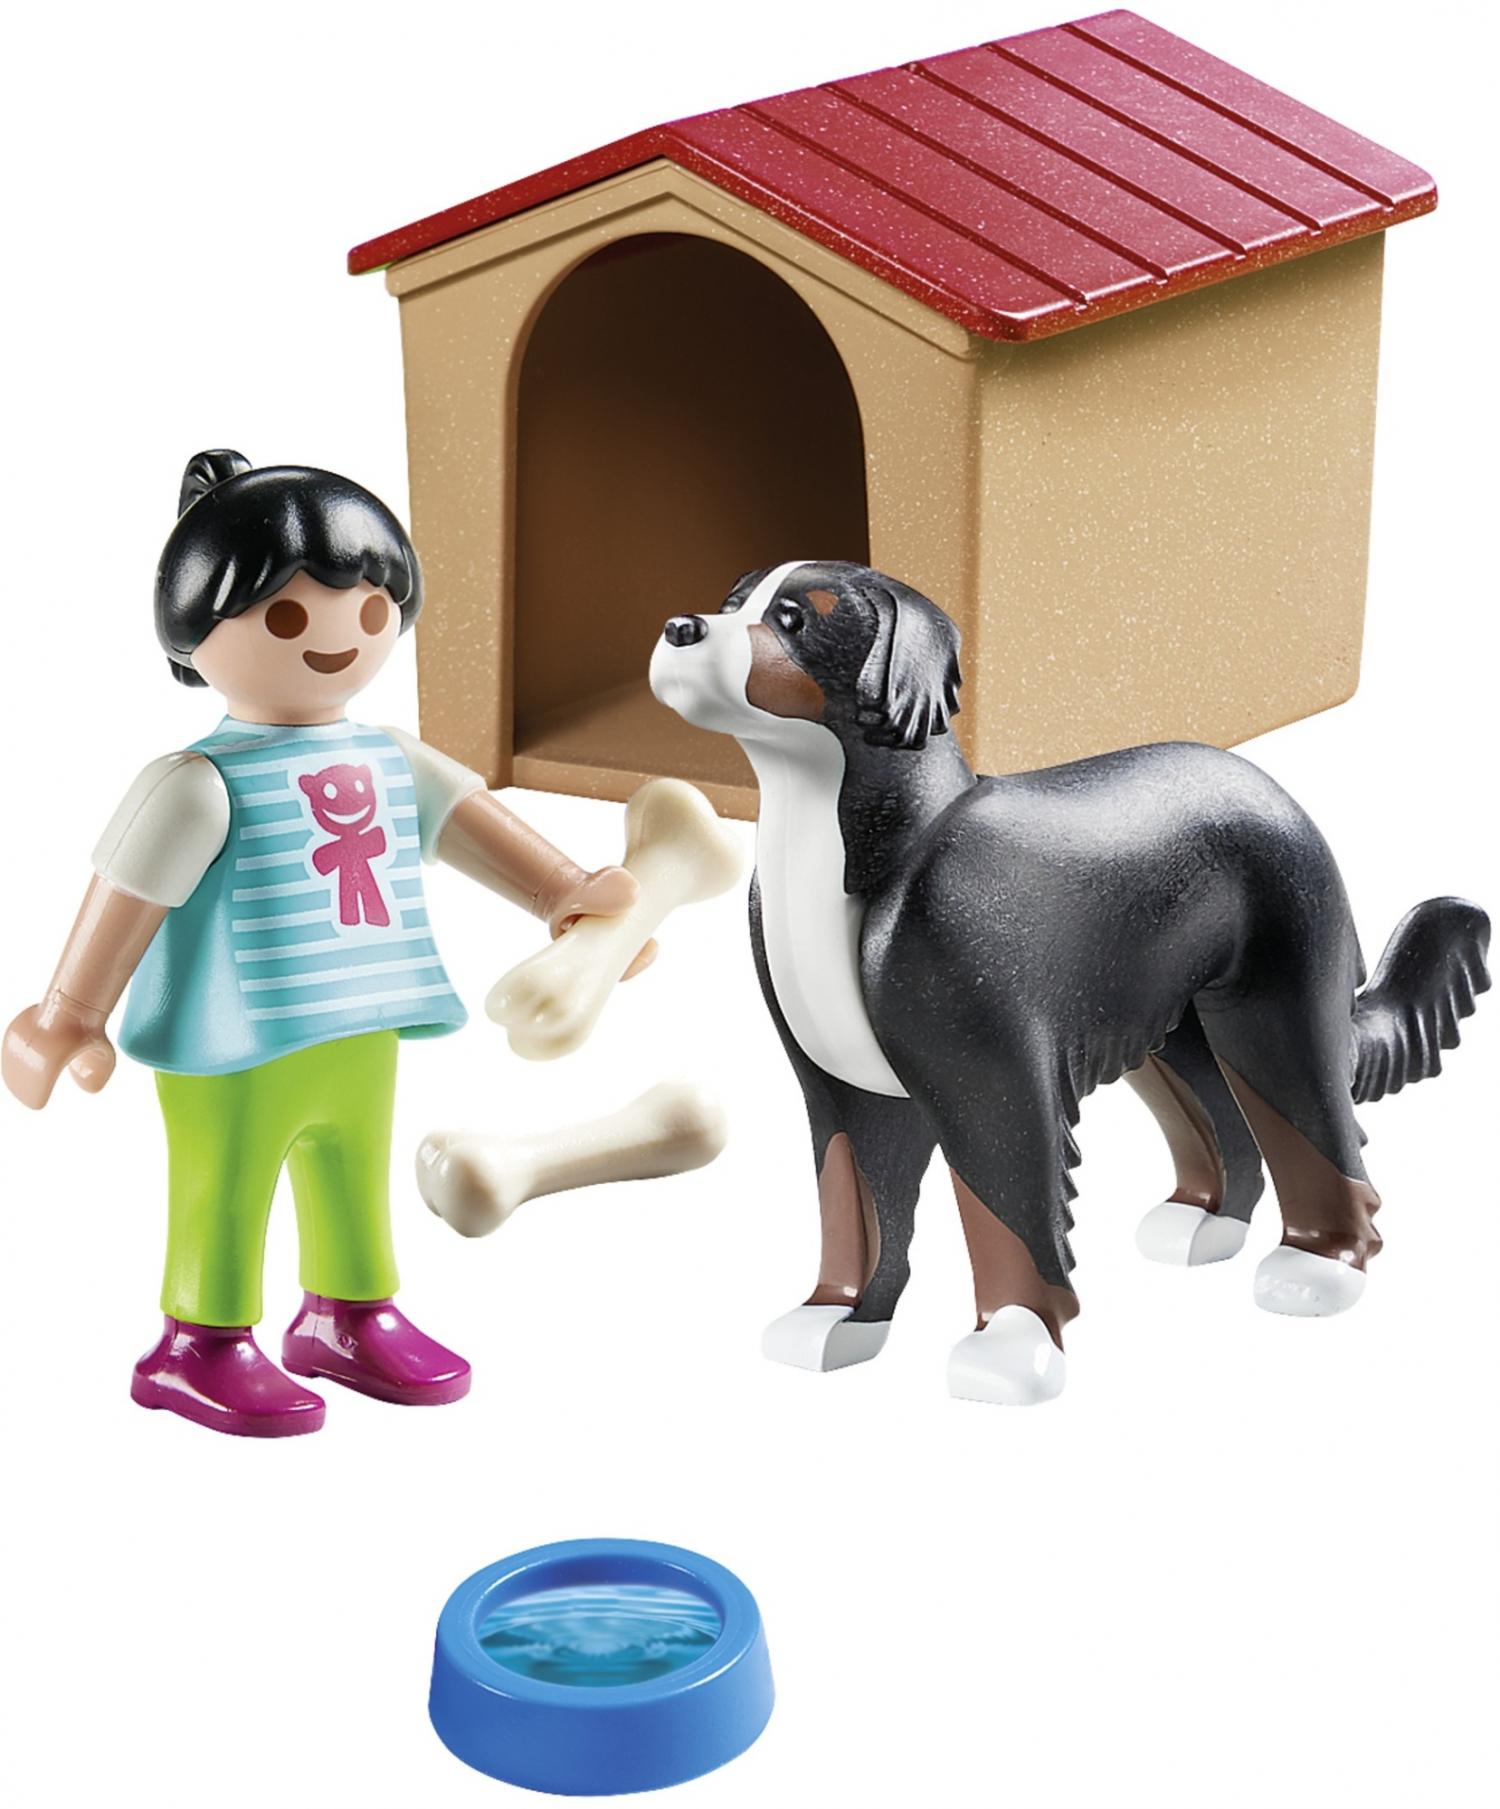 70136 Kind met Hond Alles Speelgoed